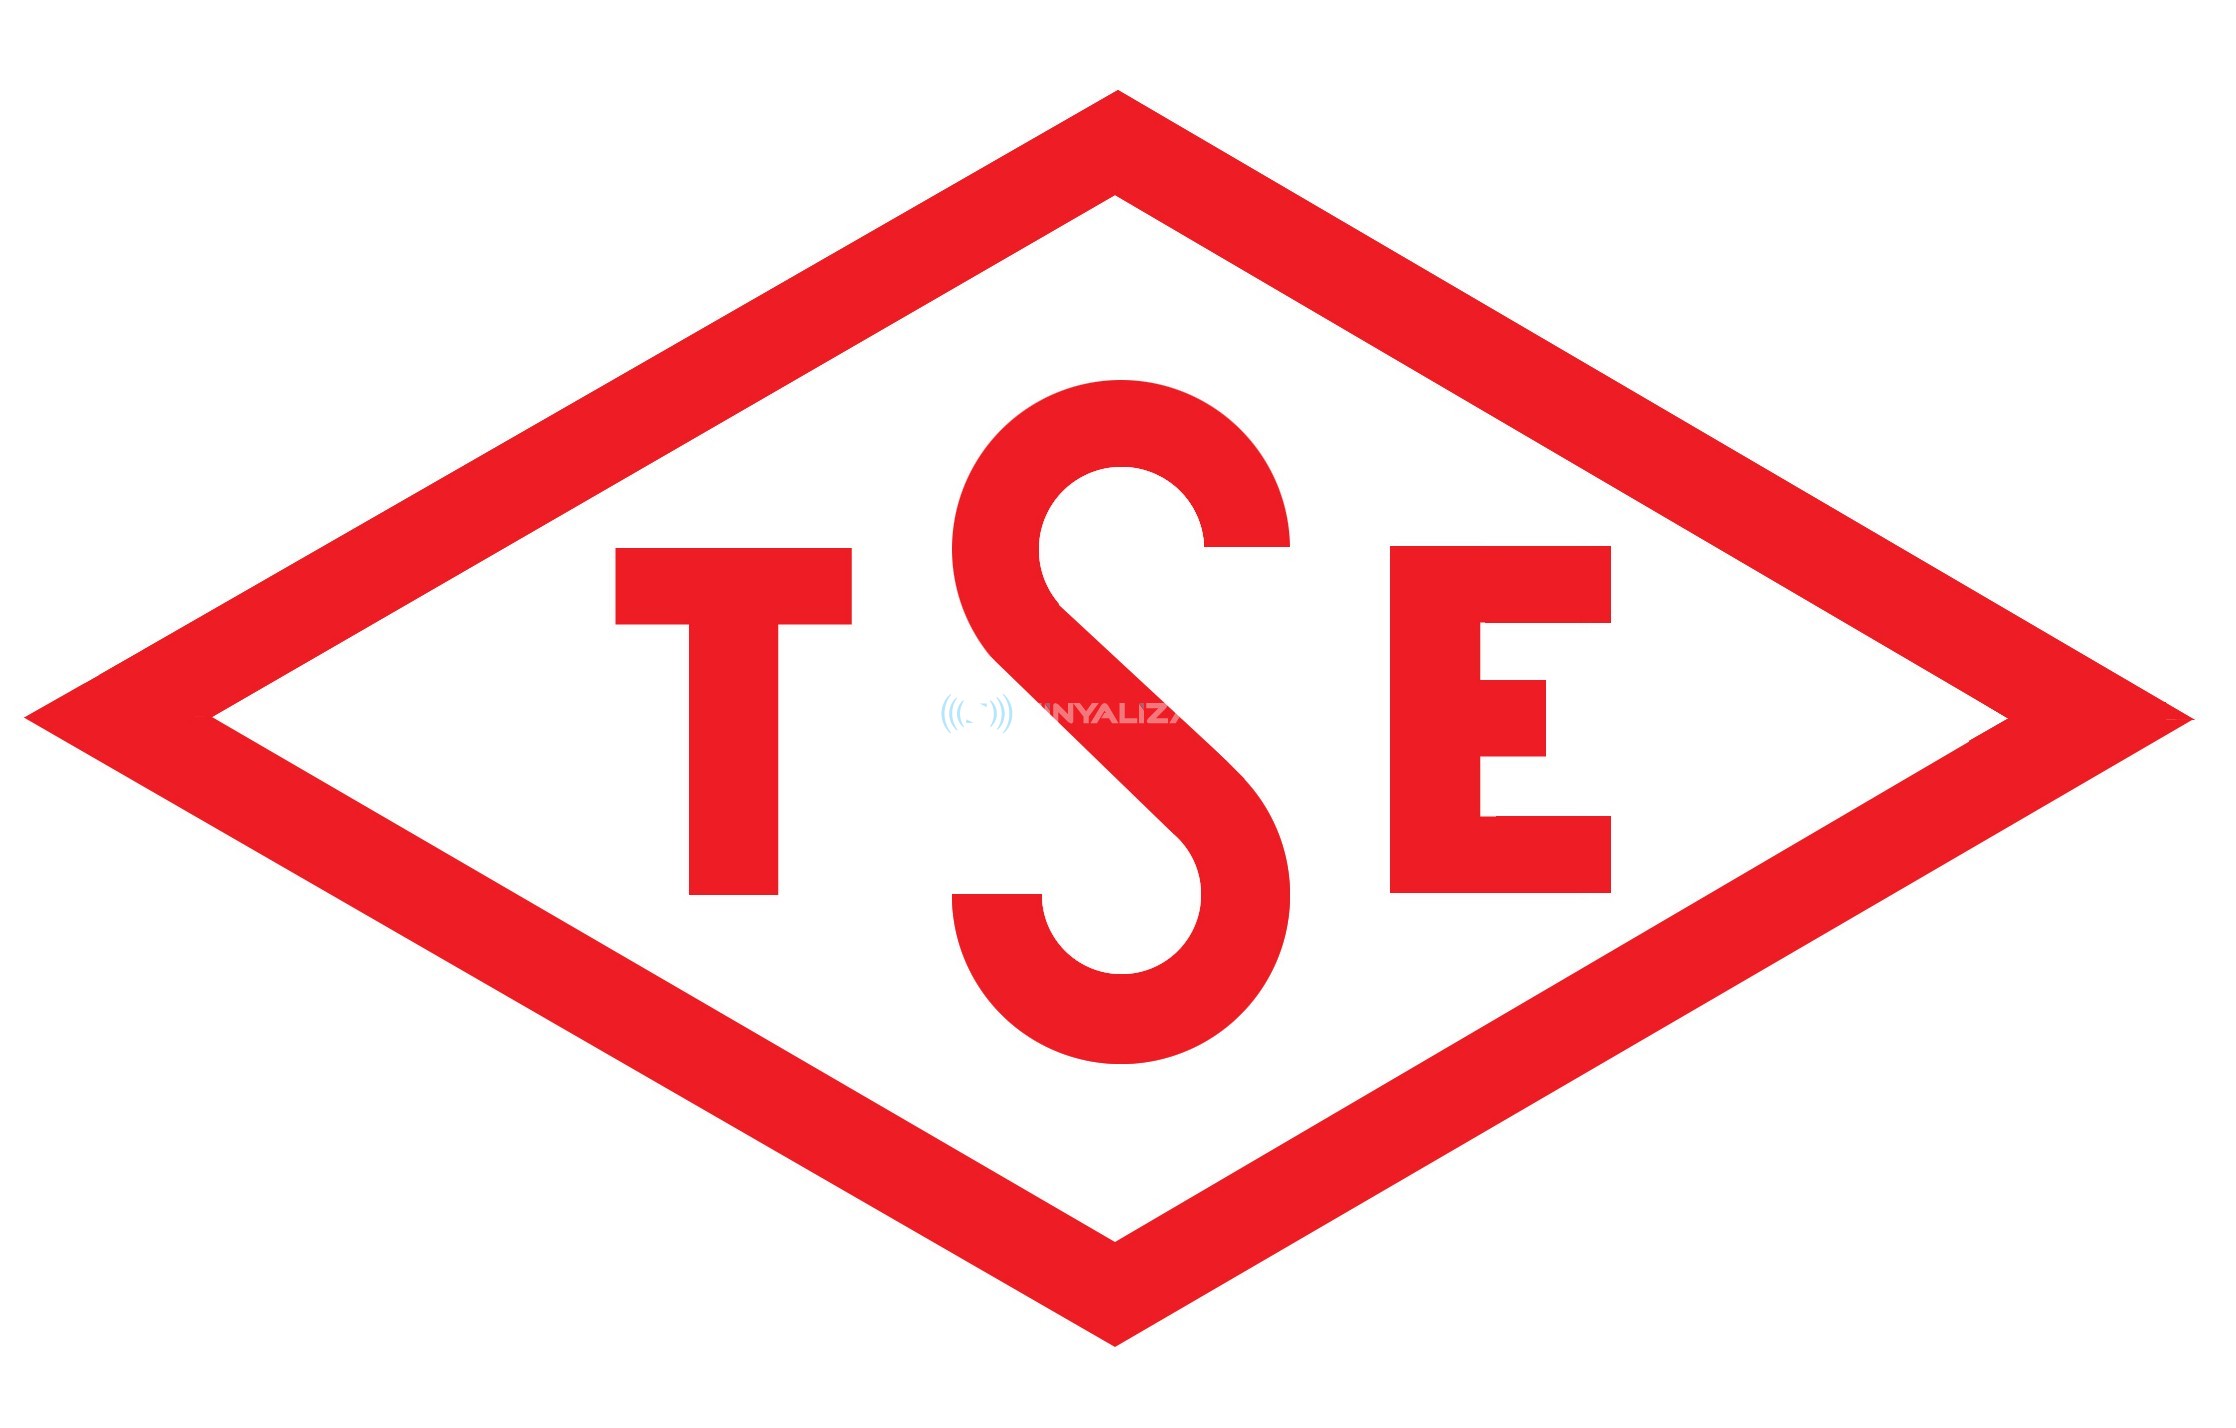 Türkiye'de ilk Tse  12352  sertifika süreci firmamızca tamamlanmıştır